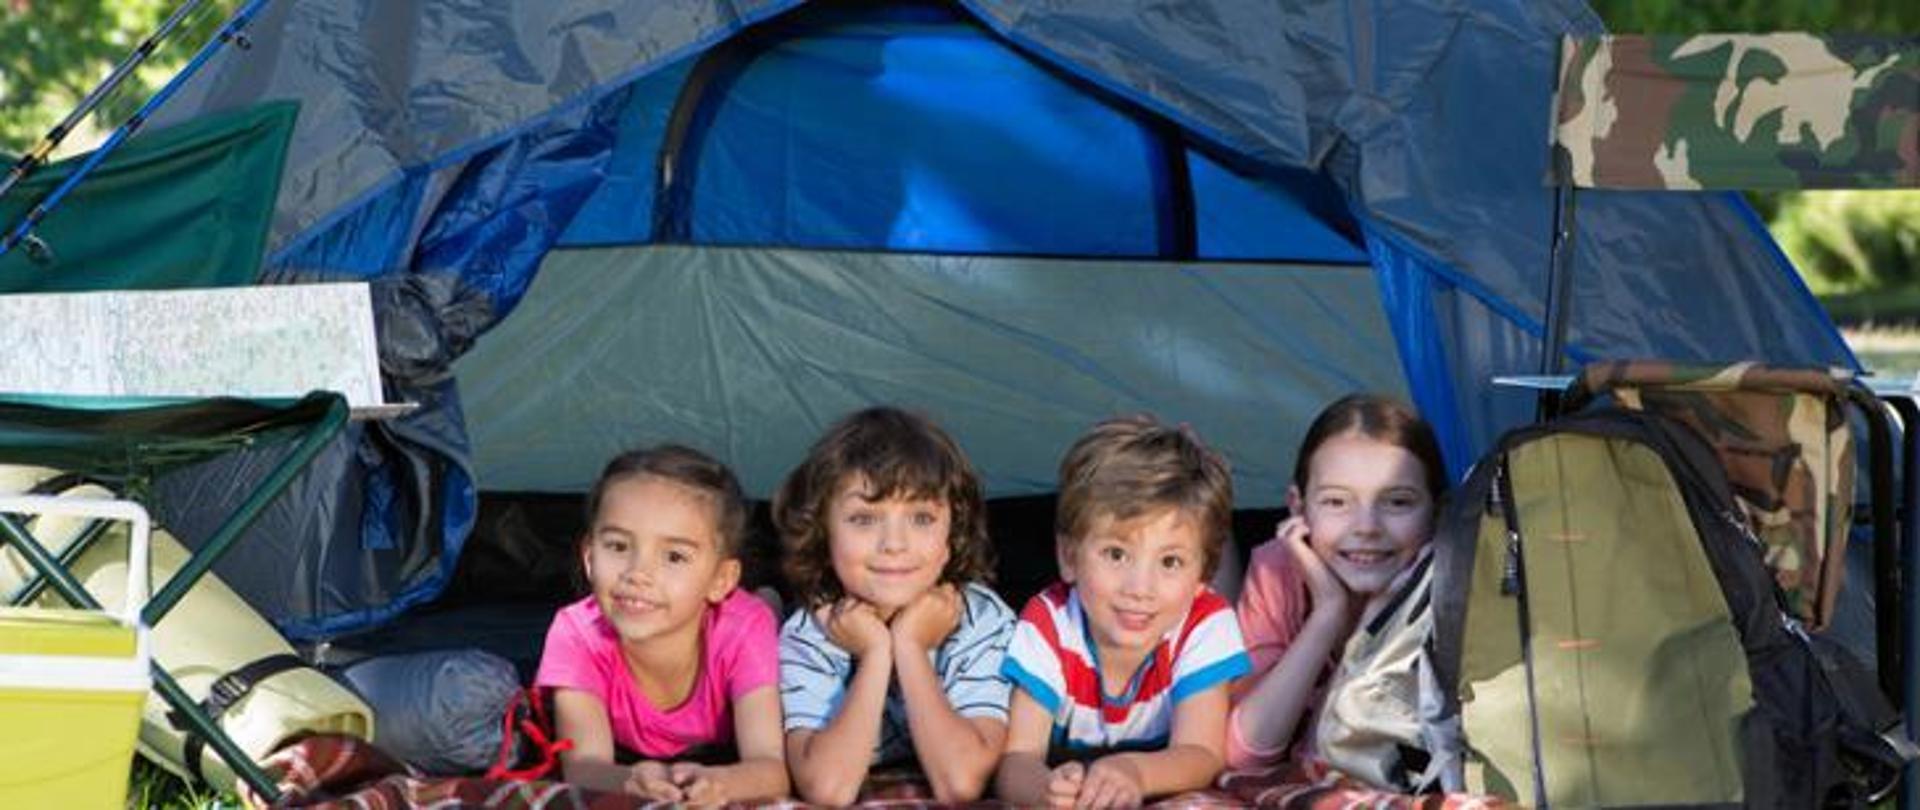 Na zdjęciu czwórka dzieci w namiocie. Dzieci patrzą w stronę fotografa. Leżą obok siebie na kocu a wokół plecaki i śpiwory i karimaty.